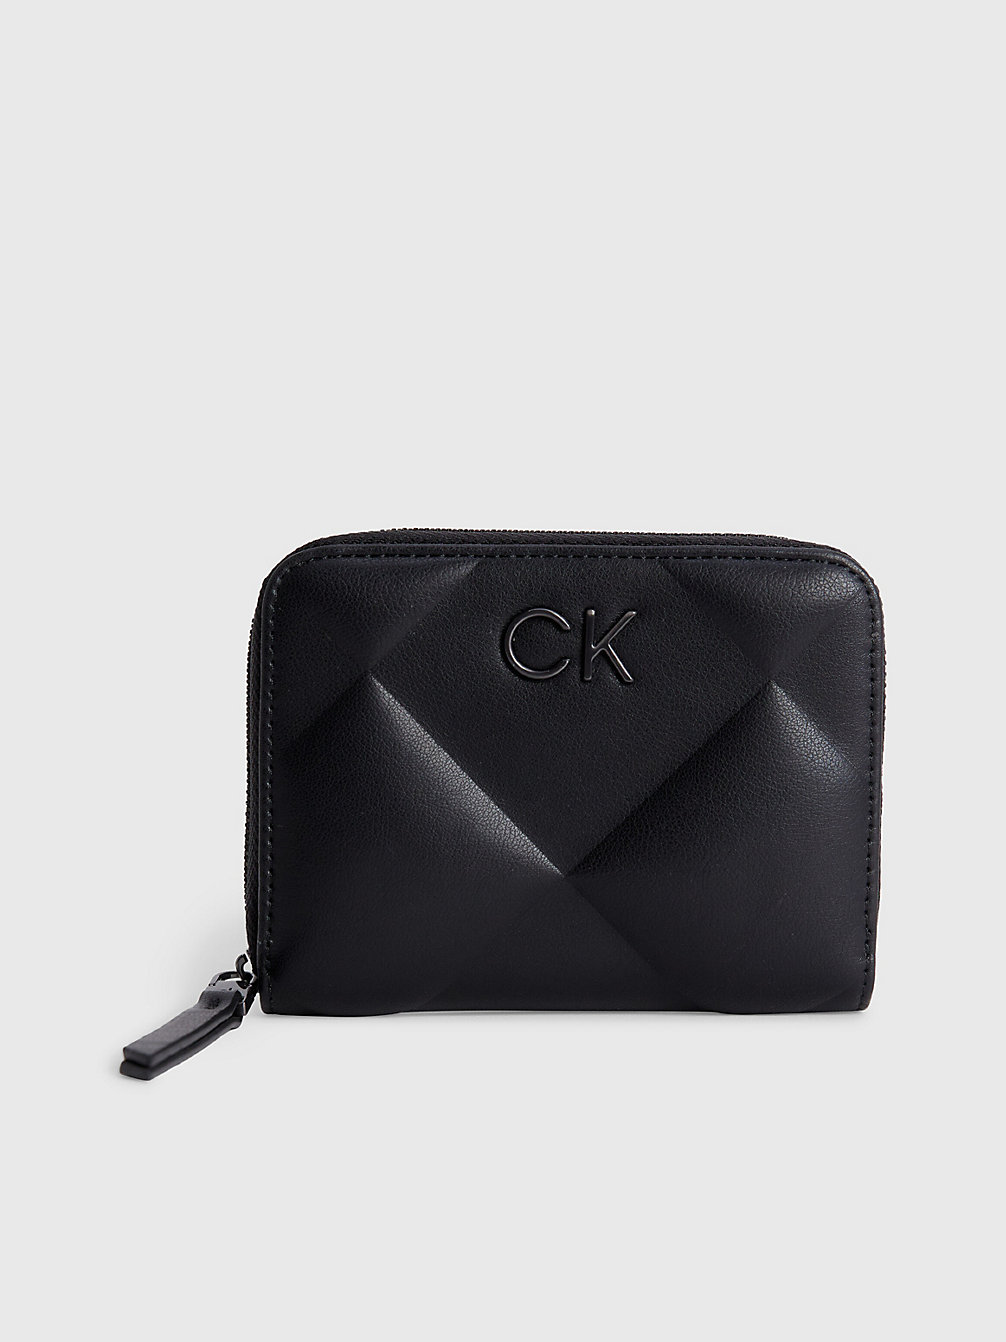 CK BLACK > Gestepptes Rfid-Portemonnaie Mit Rundum-Reißverschluss > undefined Damen - Calvin Klein